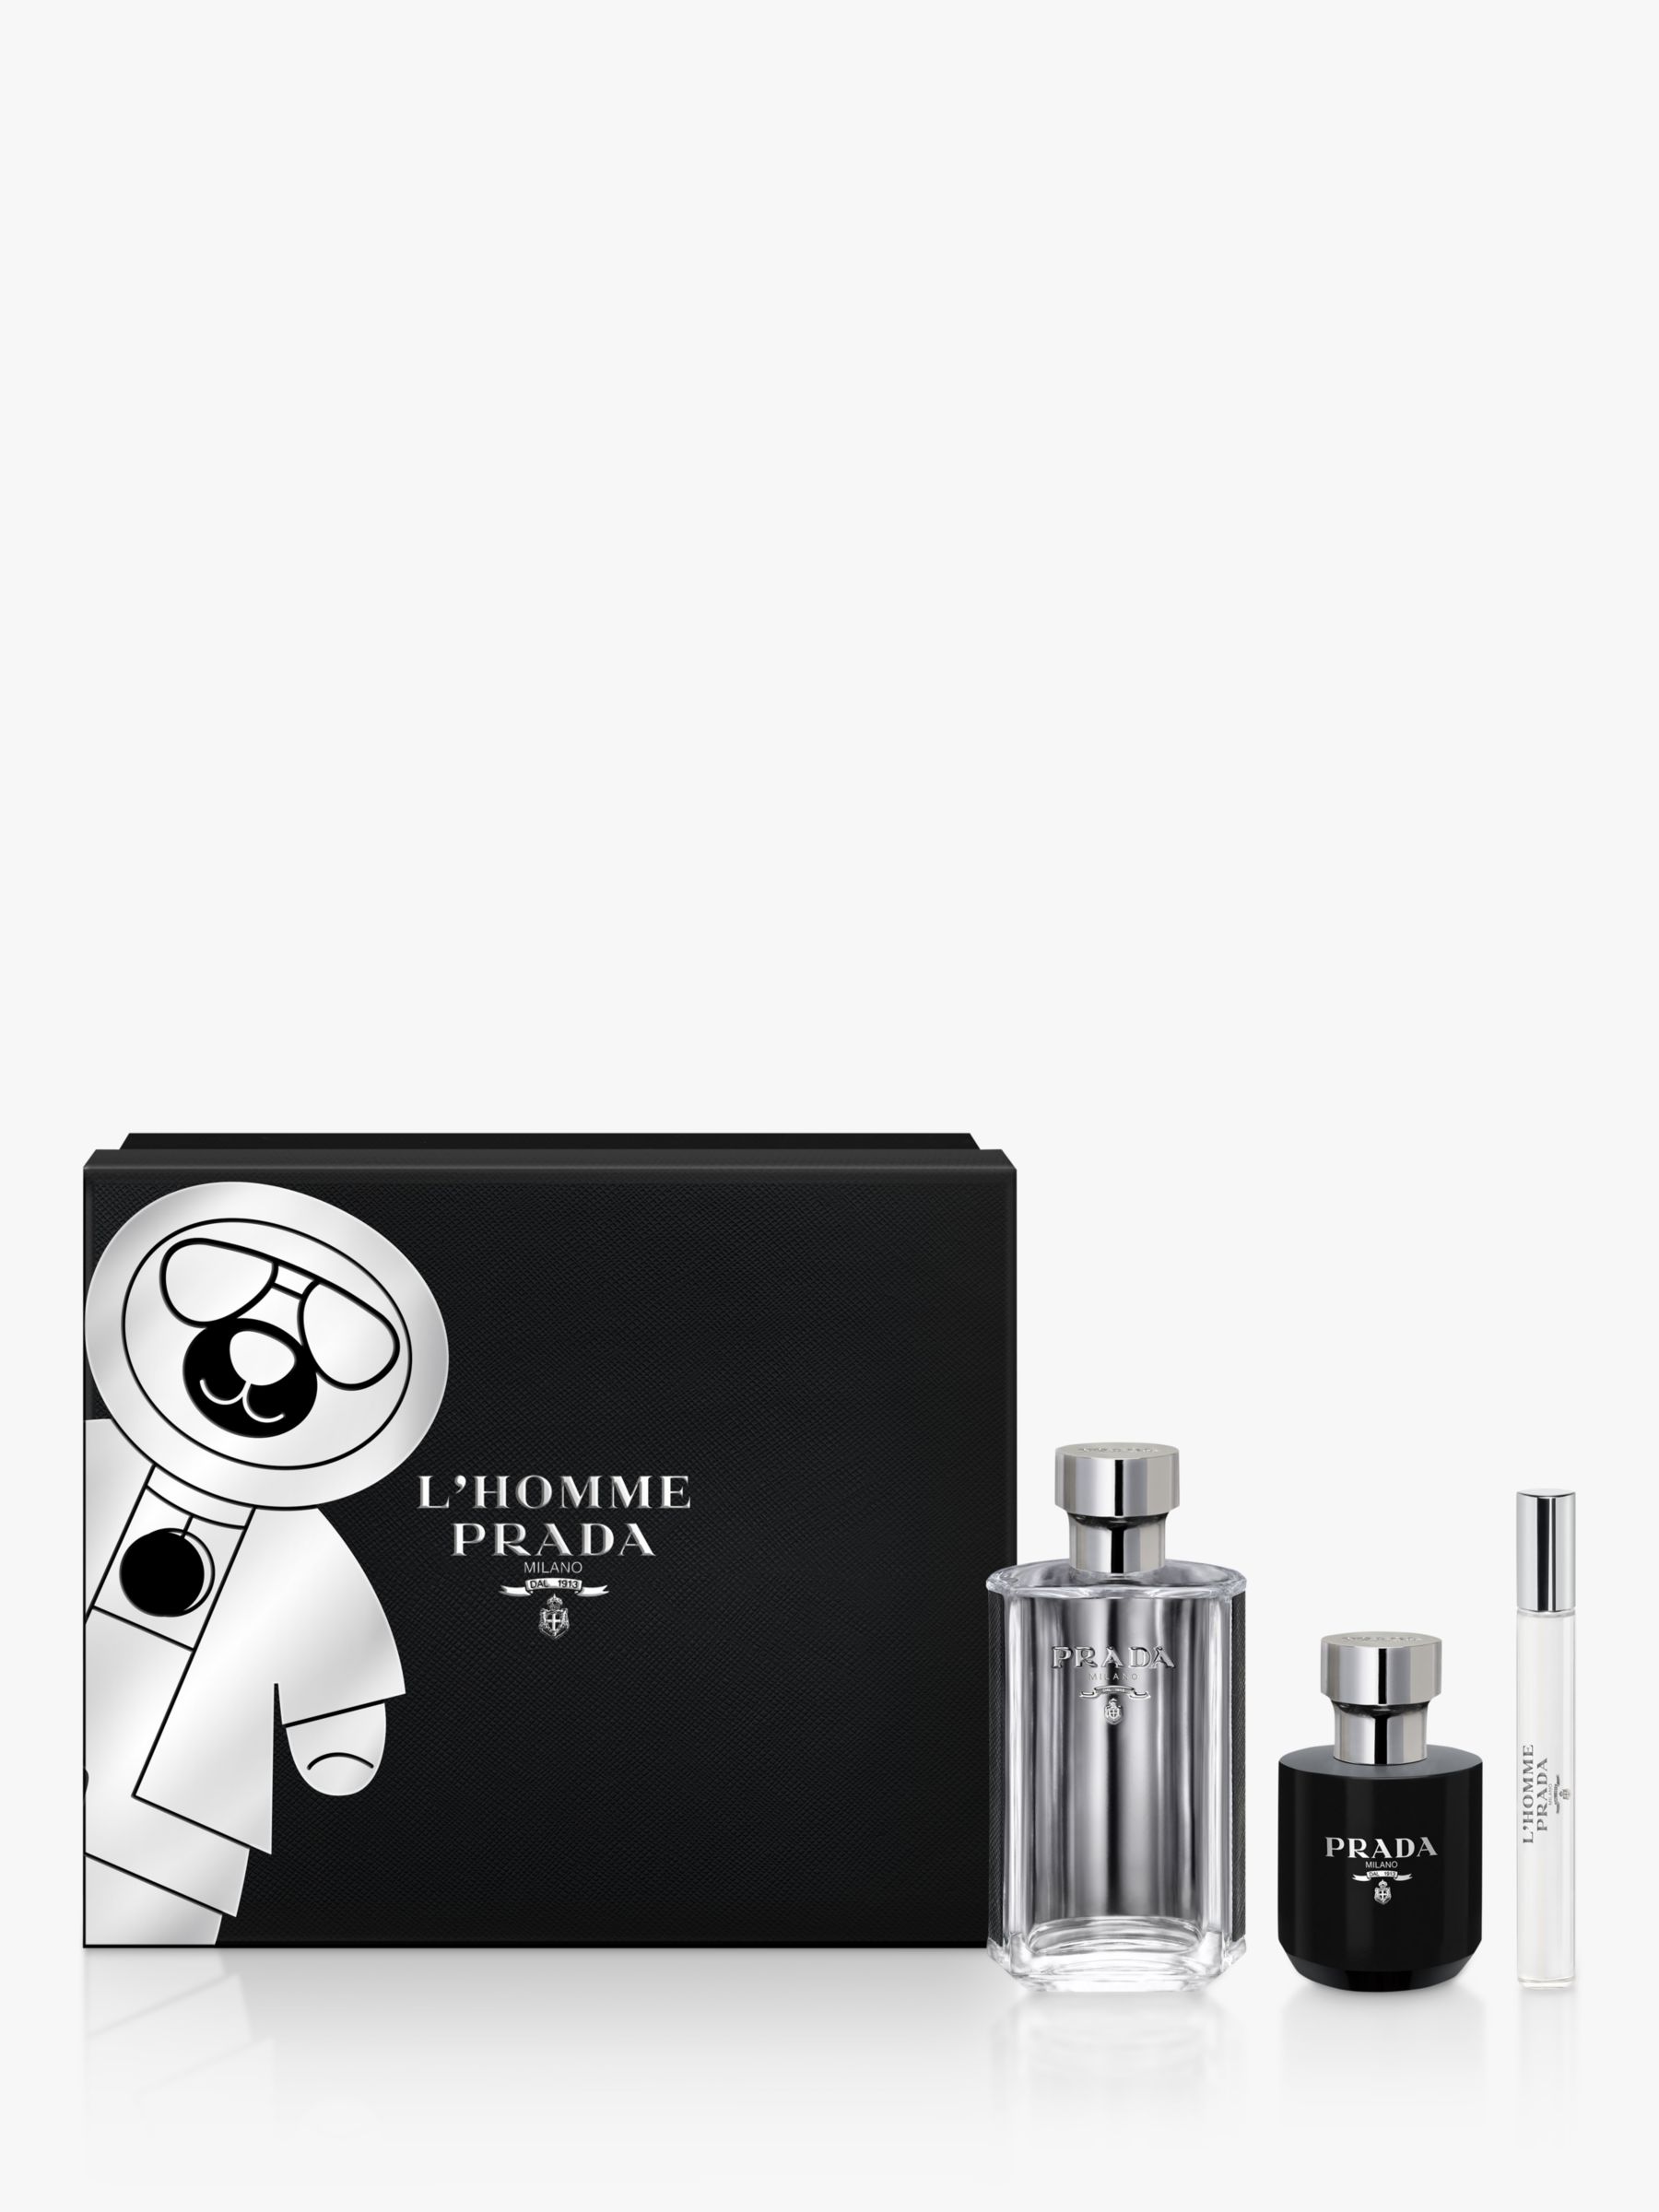 Prada L'Homme 100ml Eau de Toilette Fragrance Gift Set